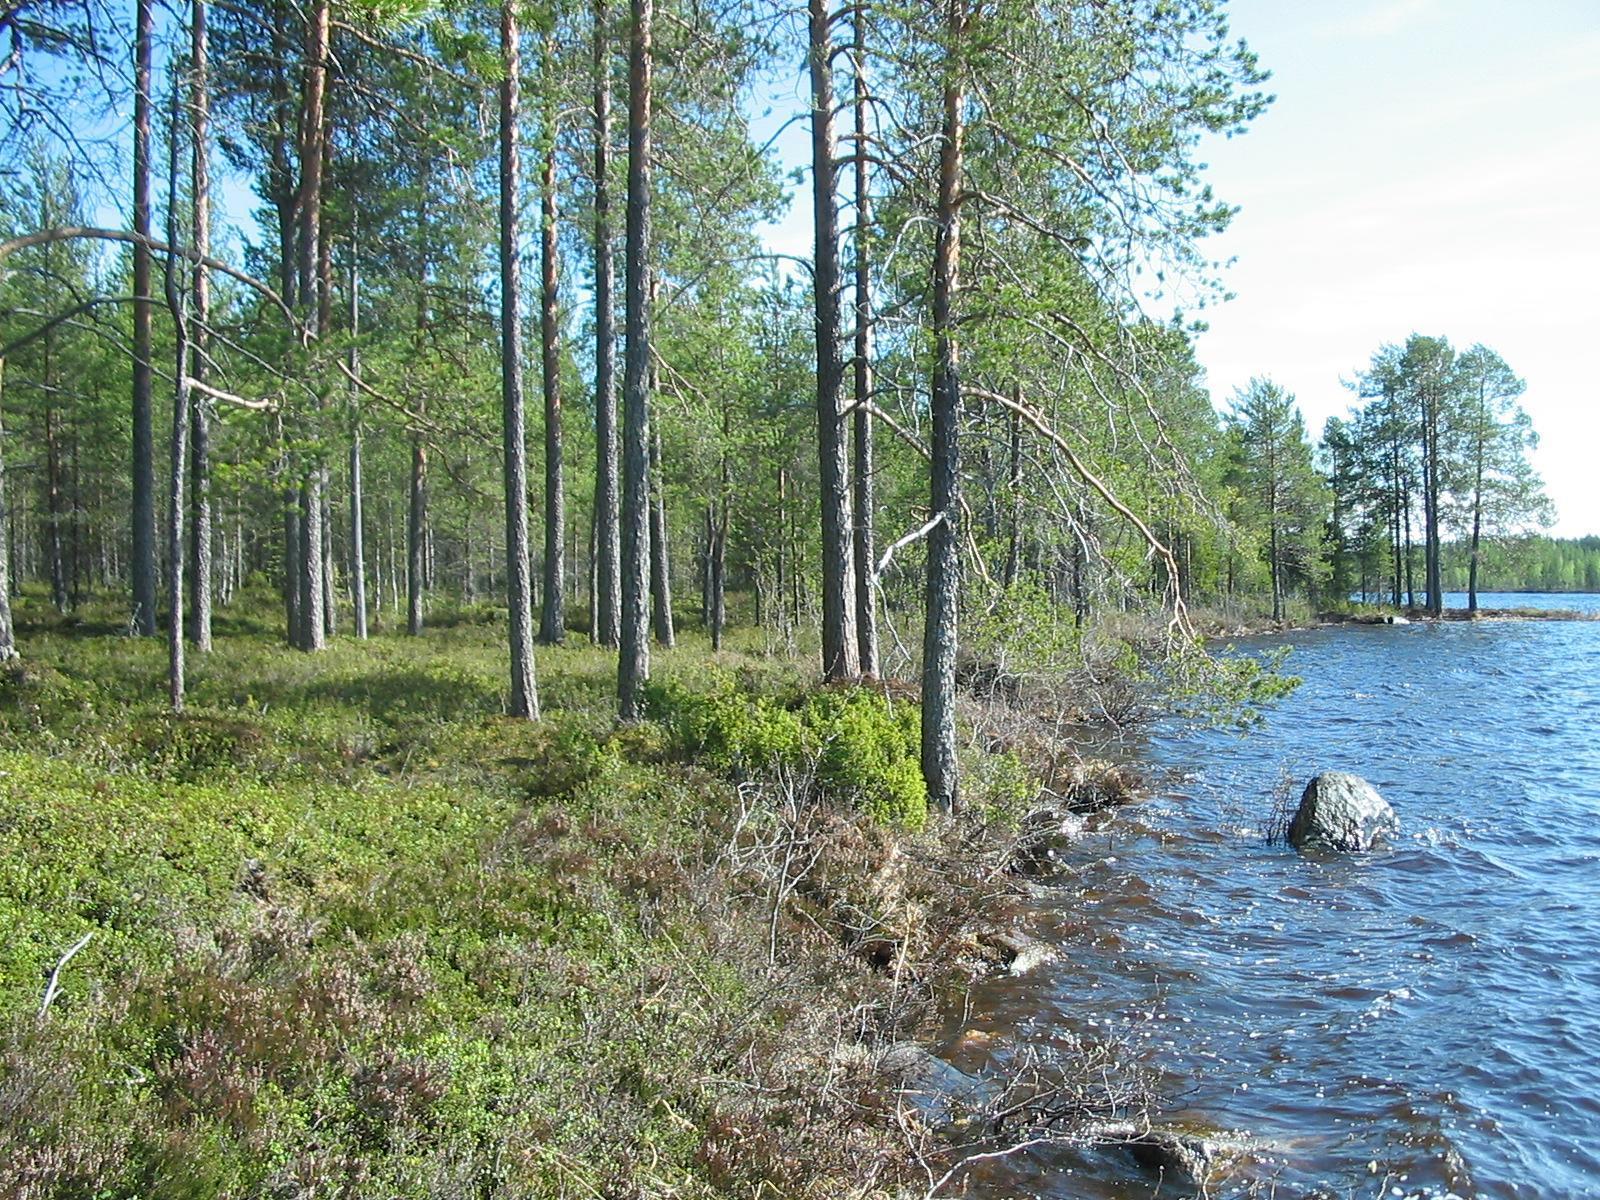 Mäntyvaltainen metsä reunustaa järveä oikealle kaartuvassa rantaviivassa. Rantavedess on kiviä.